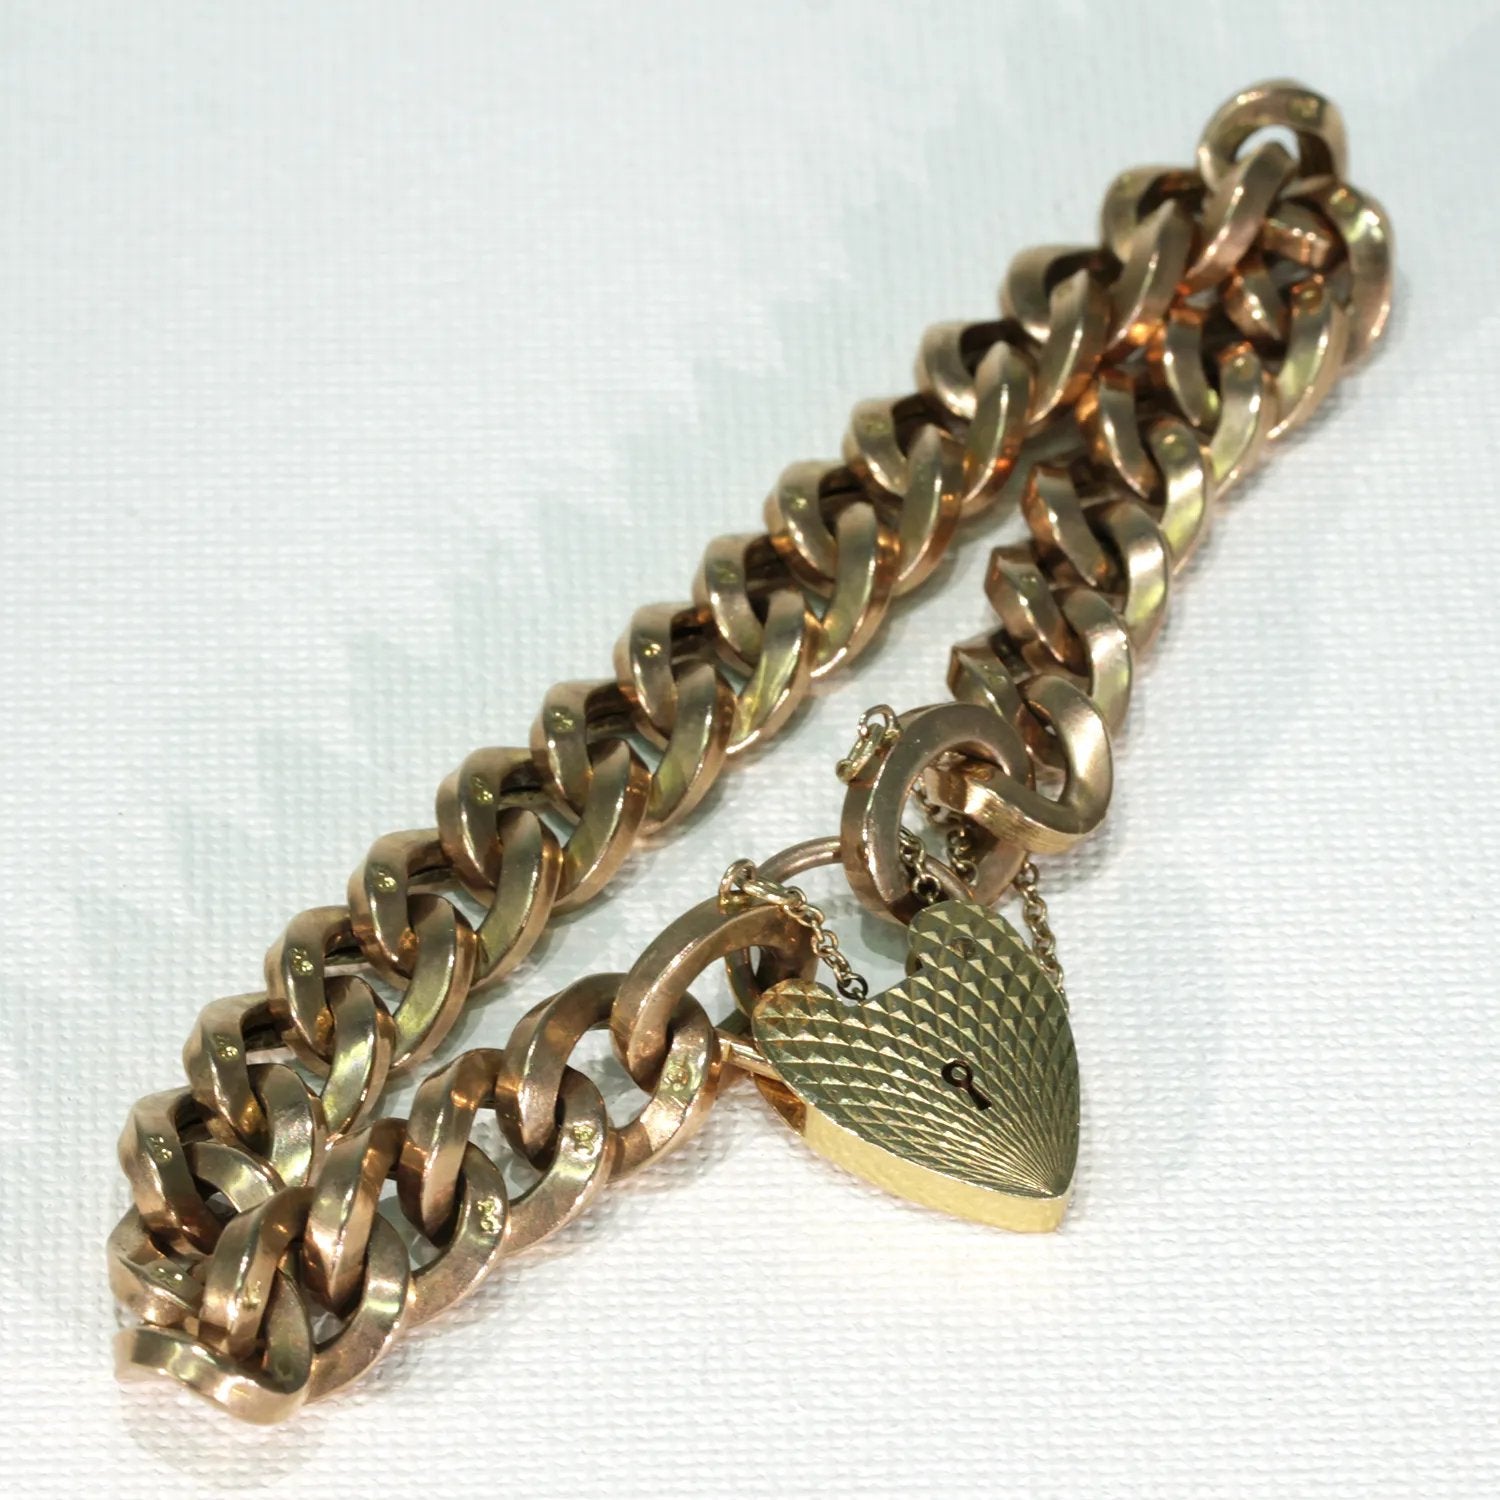 Vintage 9k Gold Curb Link Bracelet Heart Lock Hallmarked 1975